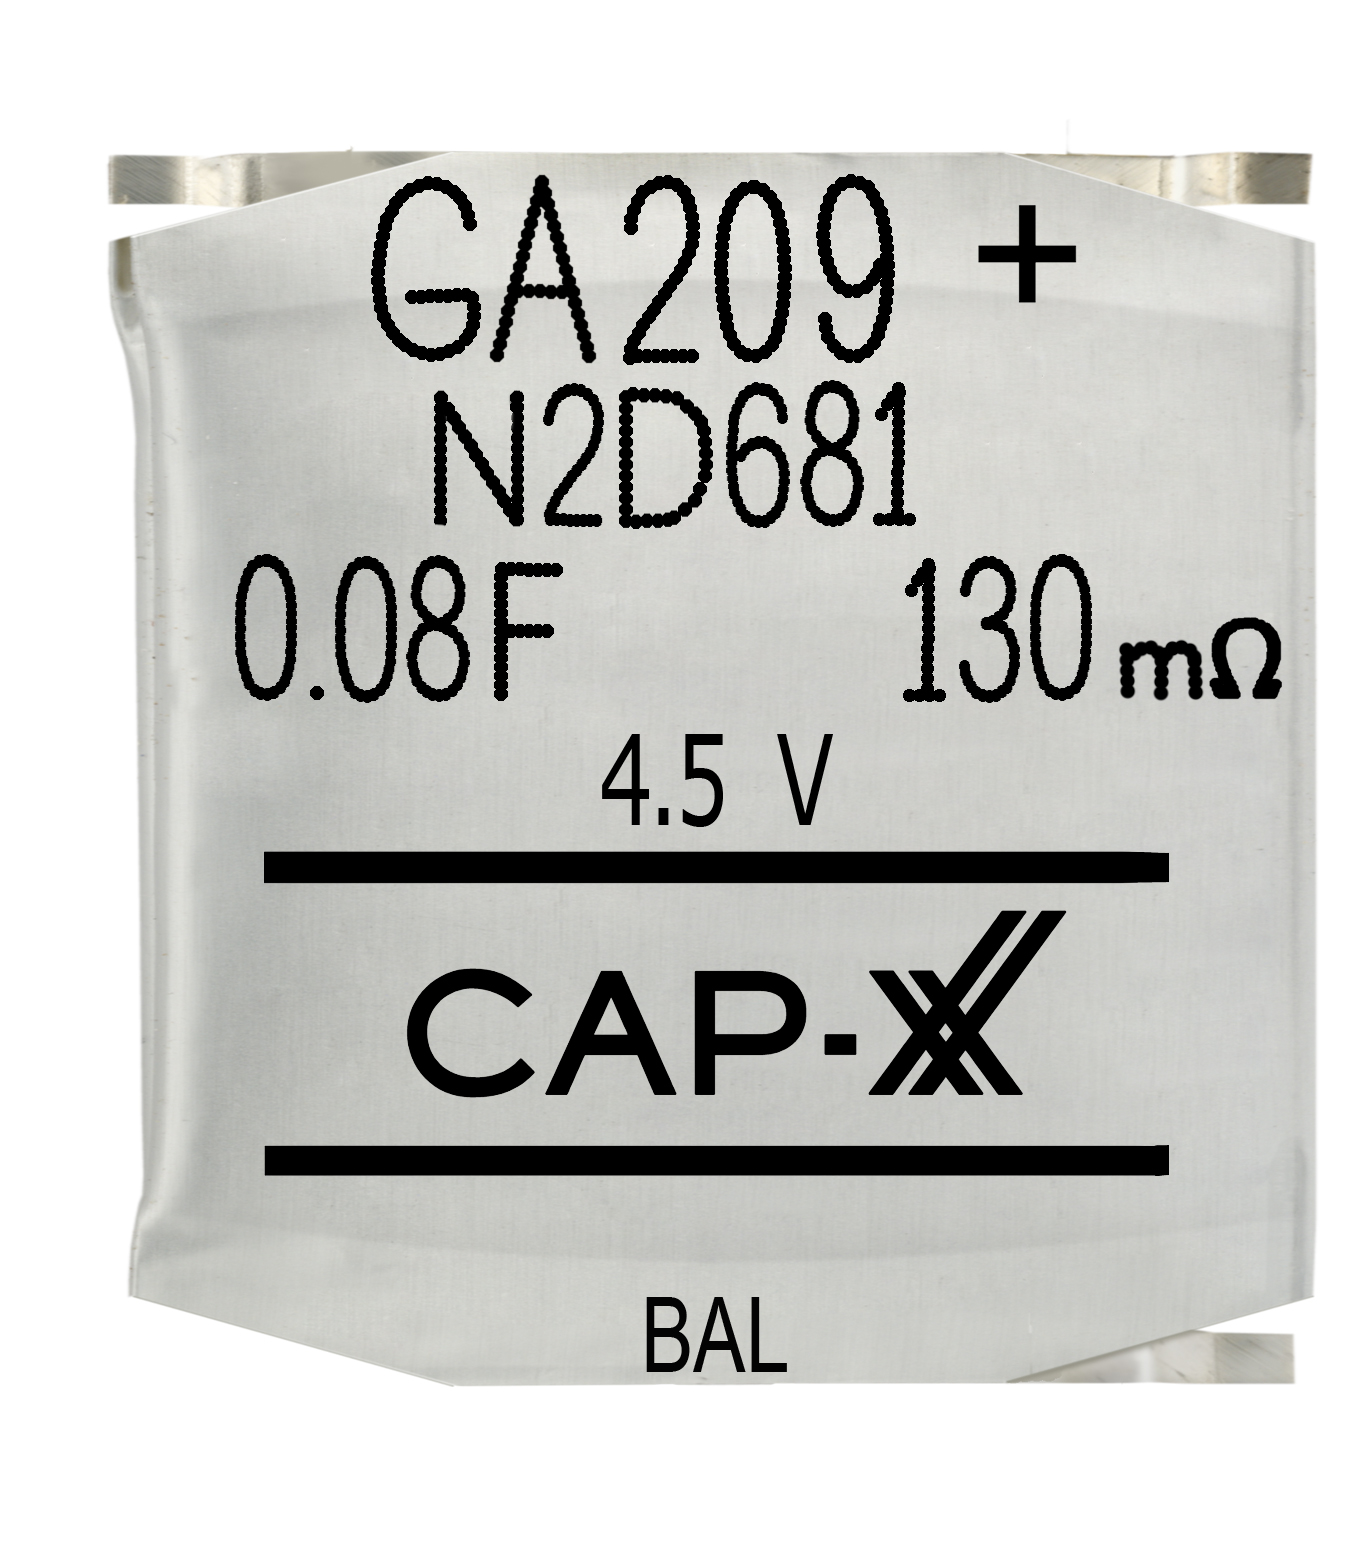 CAP-XX GA209 Supercapacitor